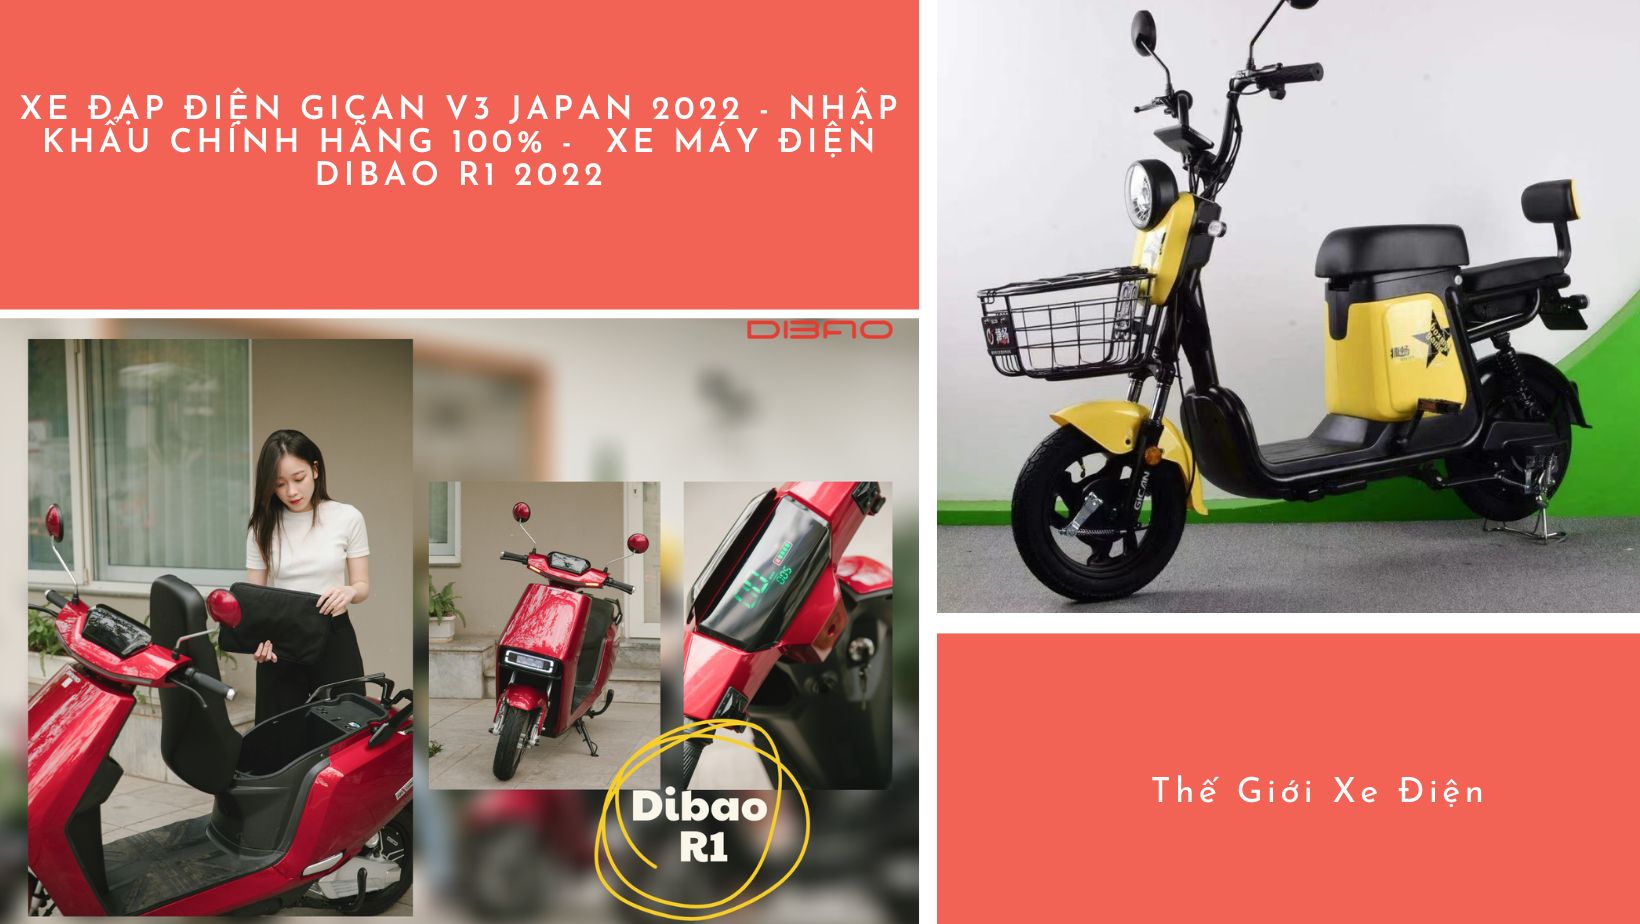 Xe đạp điện Gican V3 Japan 2022 - Nhập khẩu chính hãng 100% -  Xe máy điện Dibao R1 2022